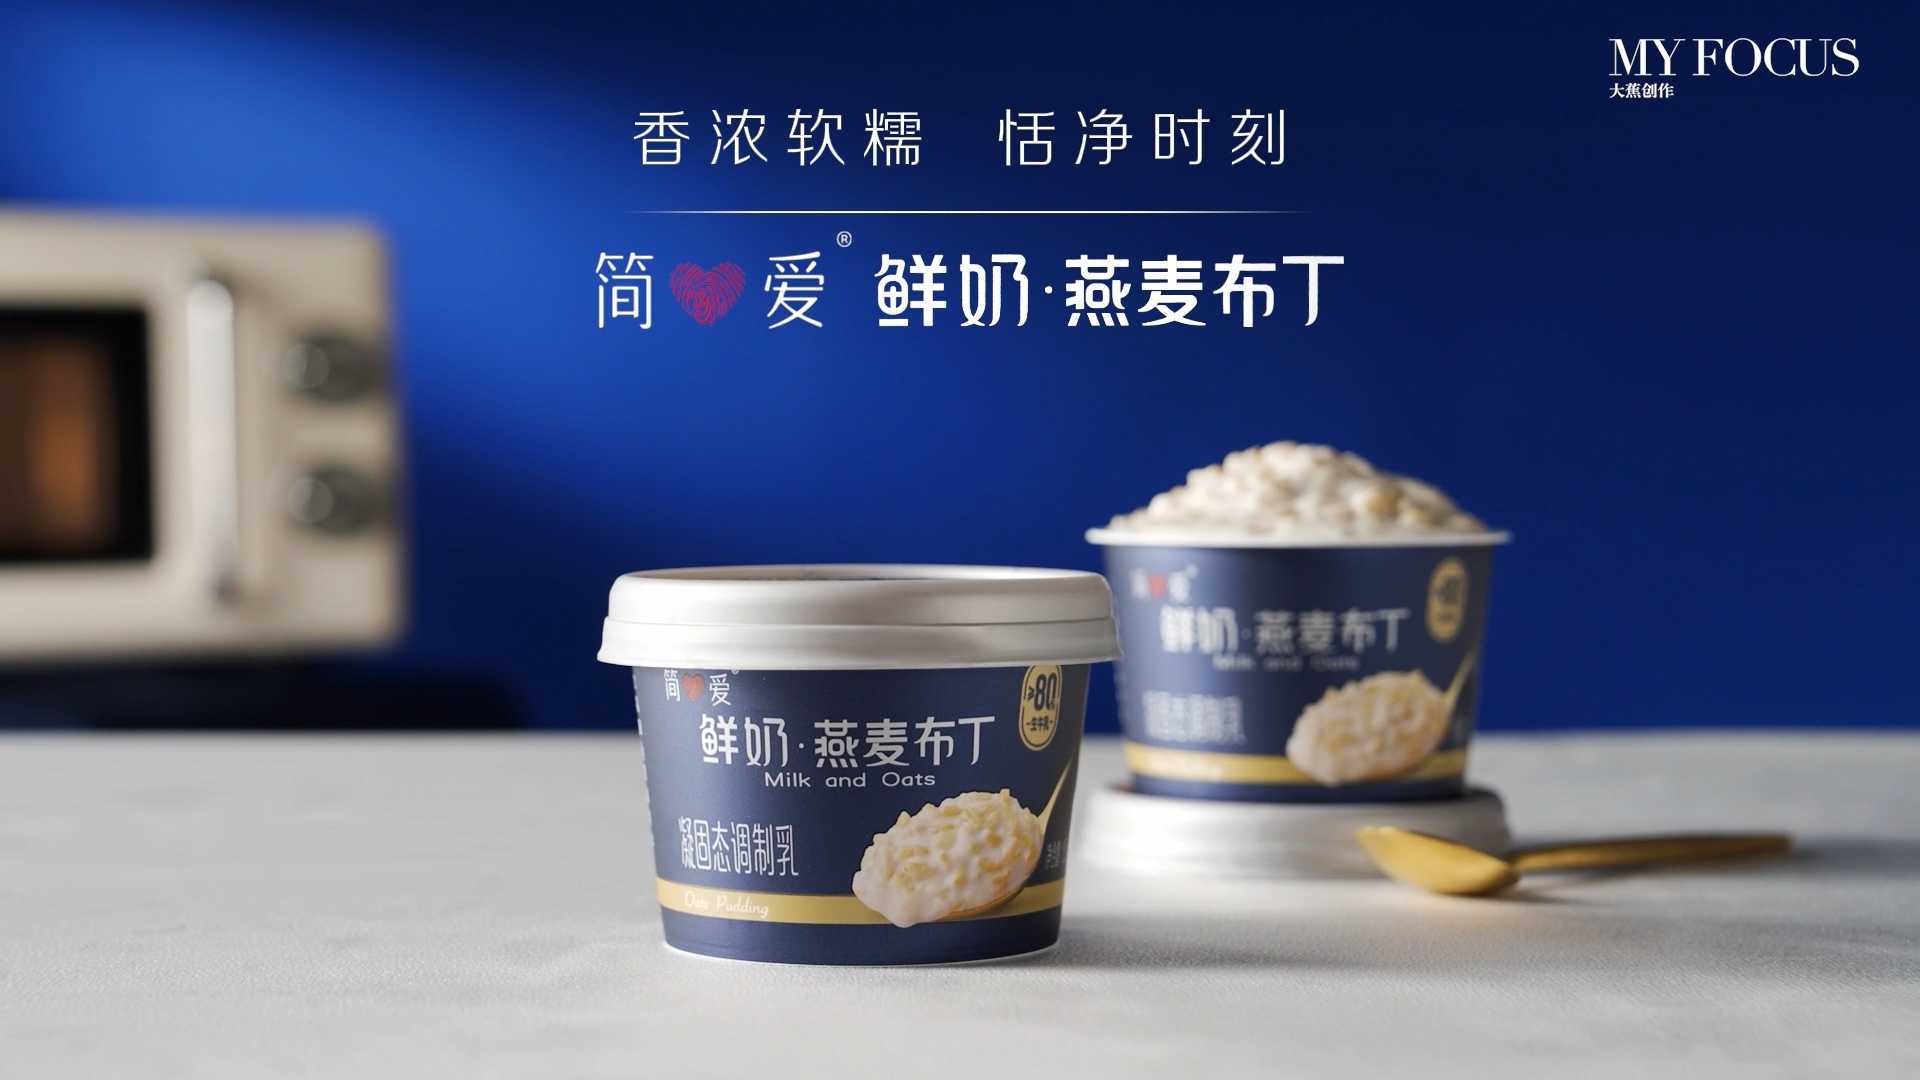 简爱燕麦布丁广告片 | 美食摄影 | 大蕉创作